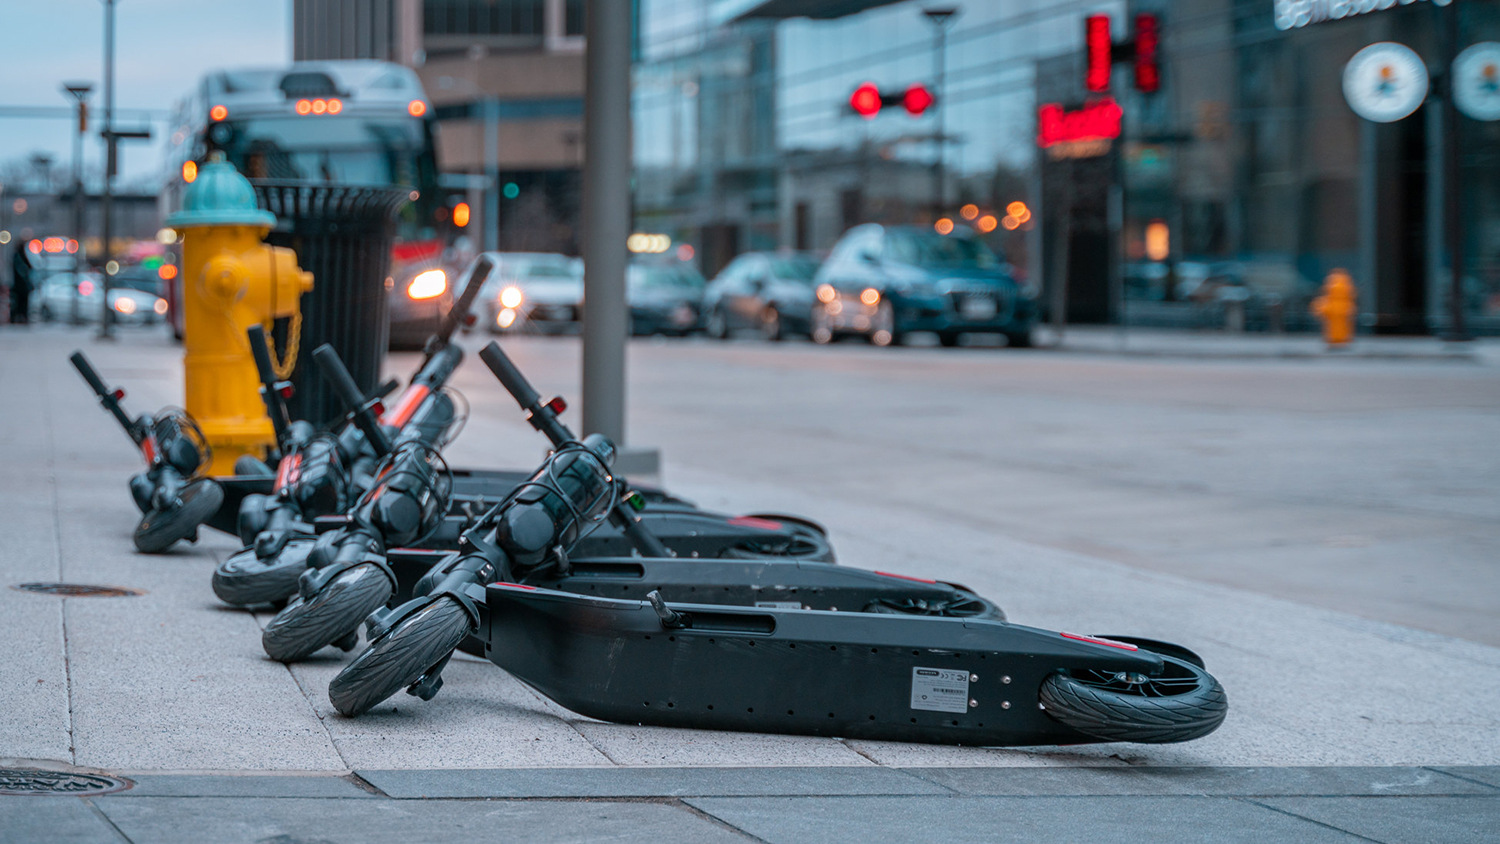 几个电子踏板车在人行道上敲了一下